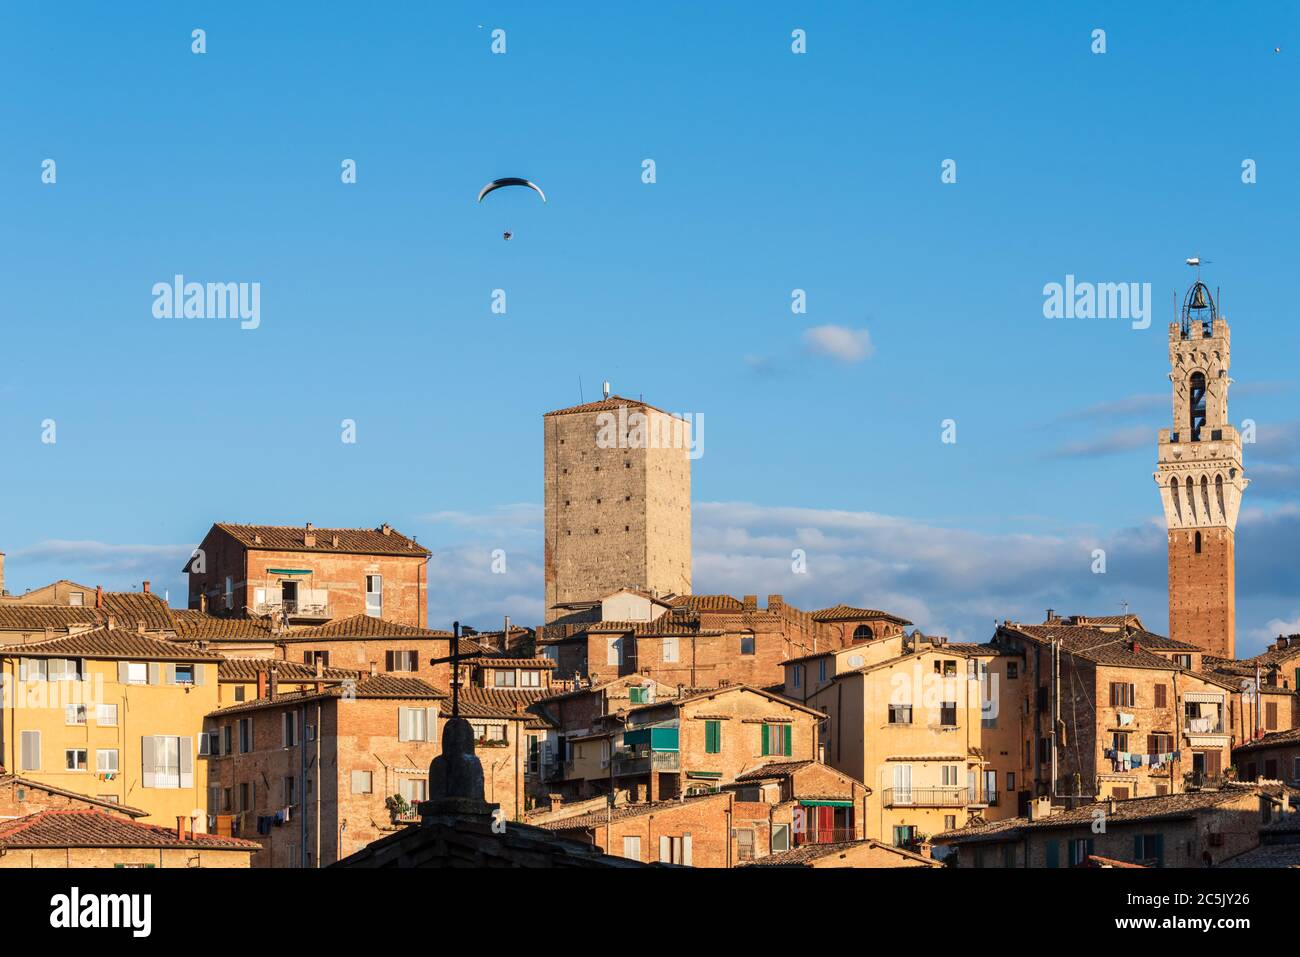 Stadtansich von Siena im Abendlicht, ein Motordrachen überfliegt die Stadt Foto de stock